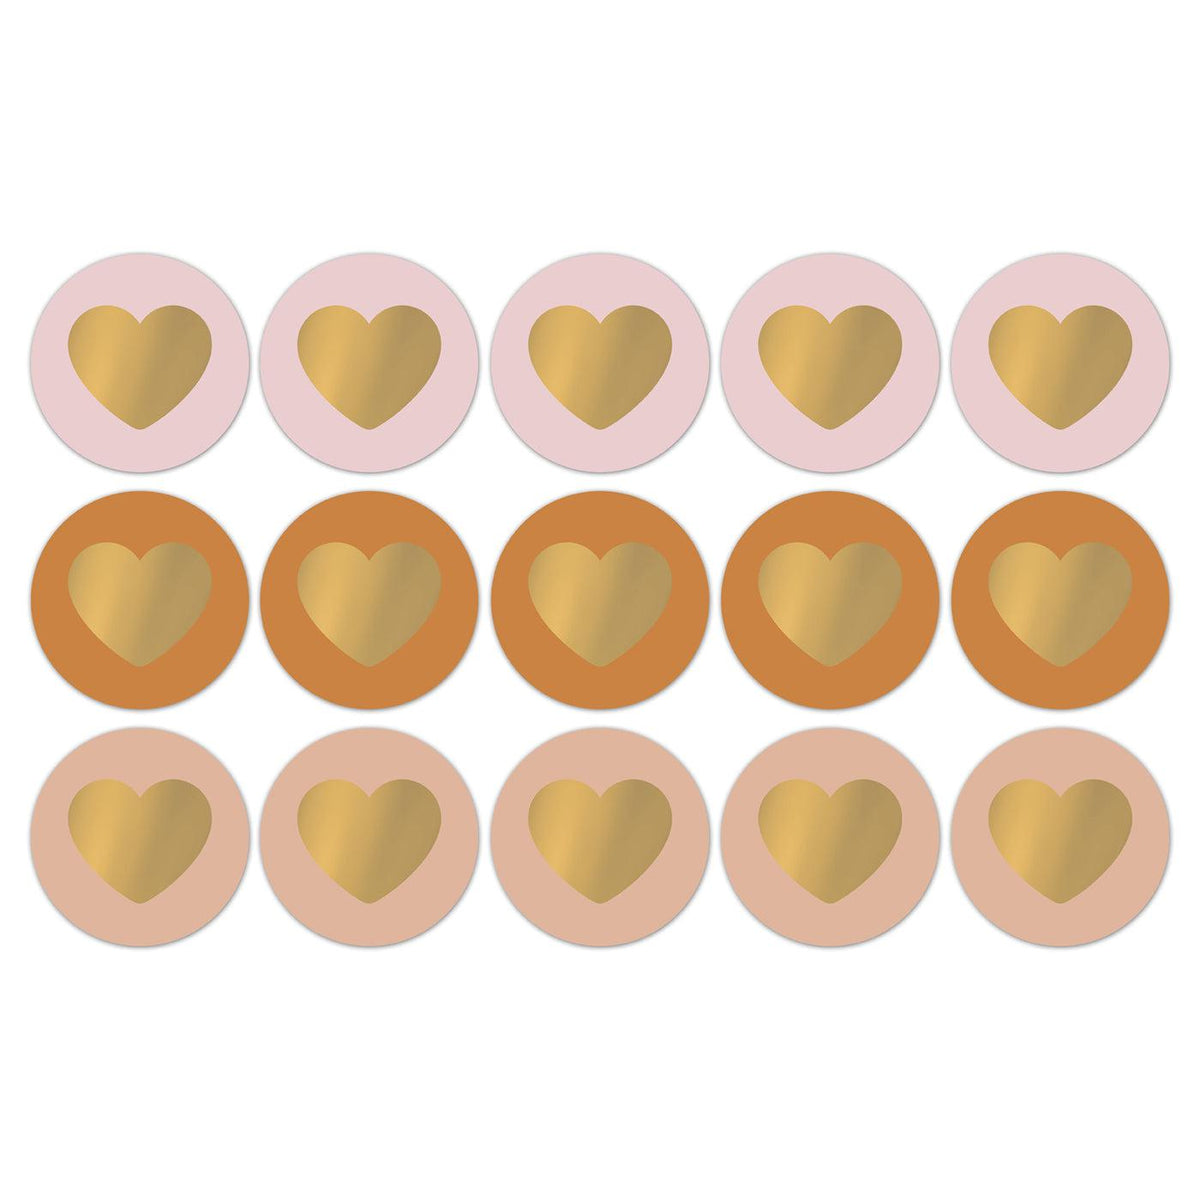 Stickers Lovely hearts warm 50mm - 10 stuks-Gifts-Kraaltjes van Renate